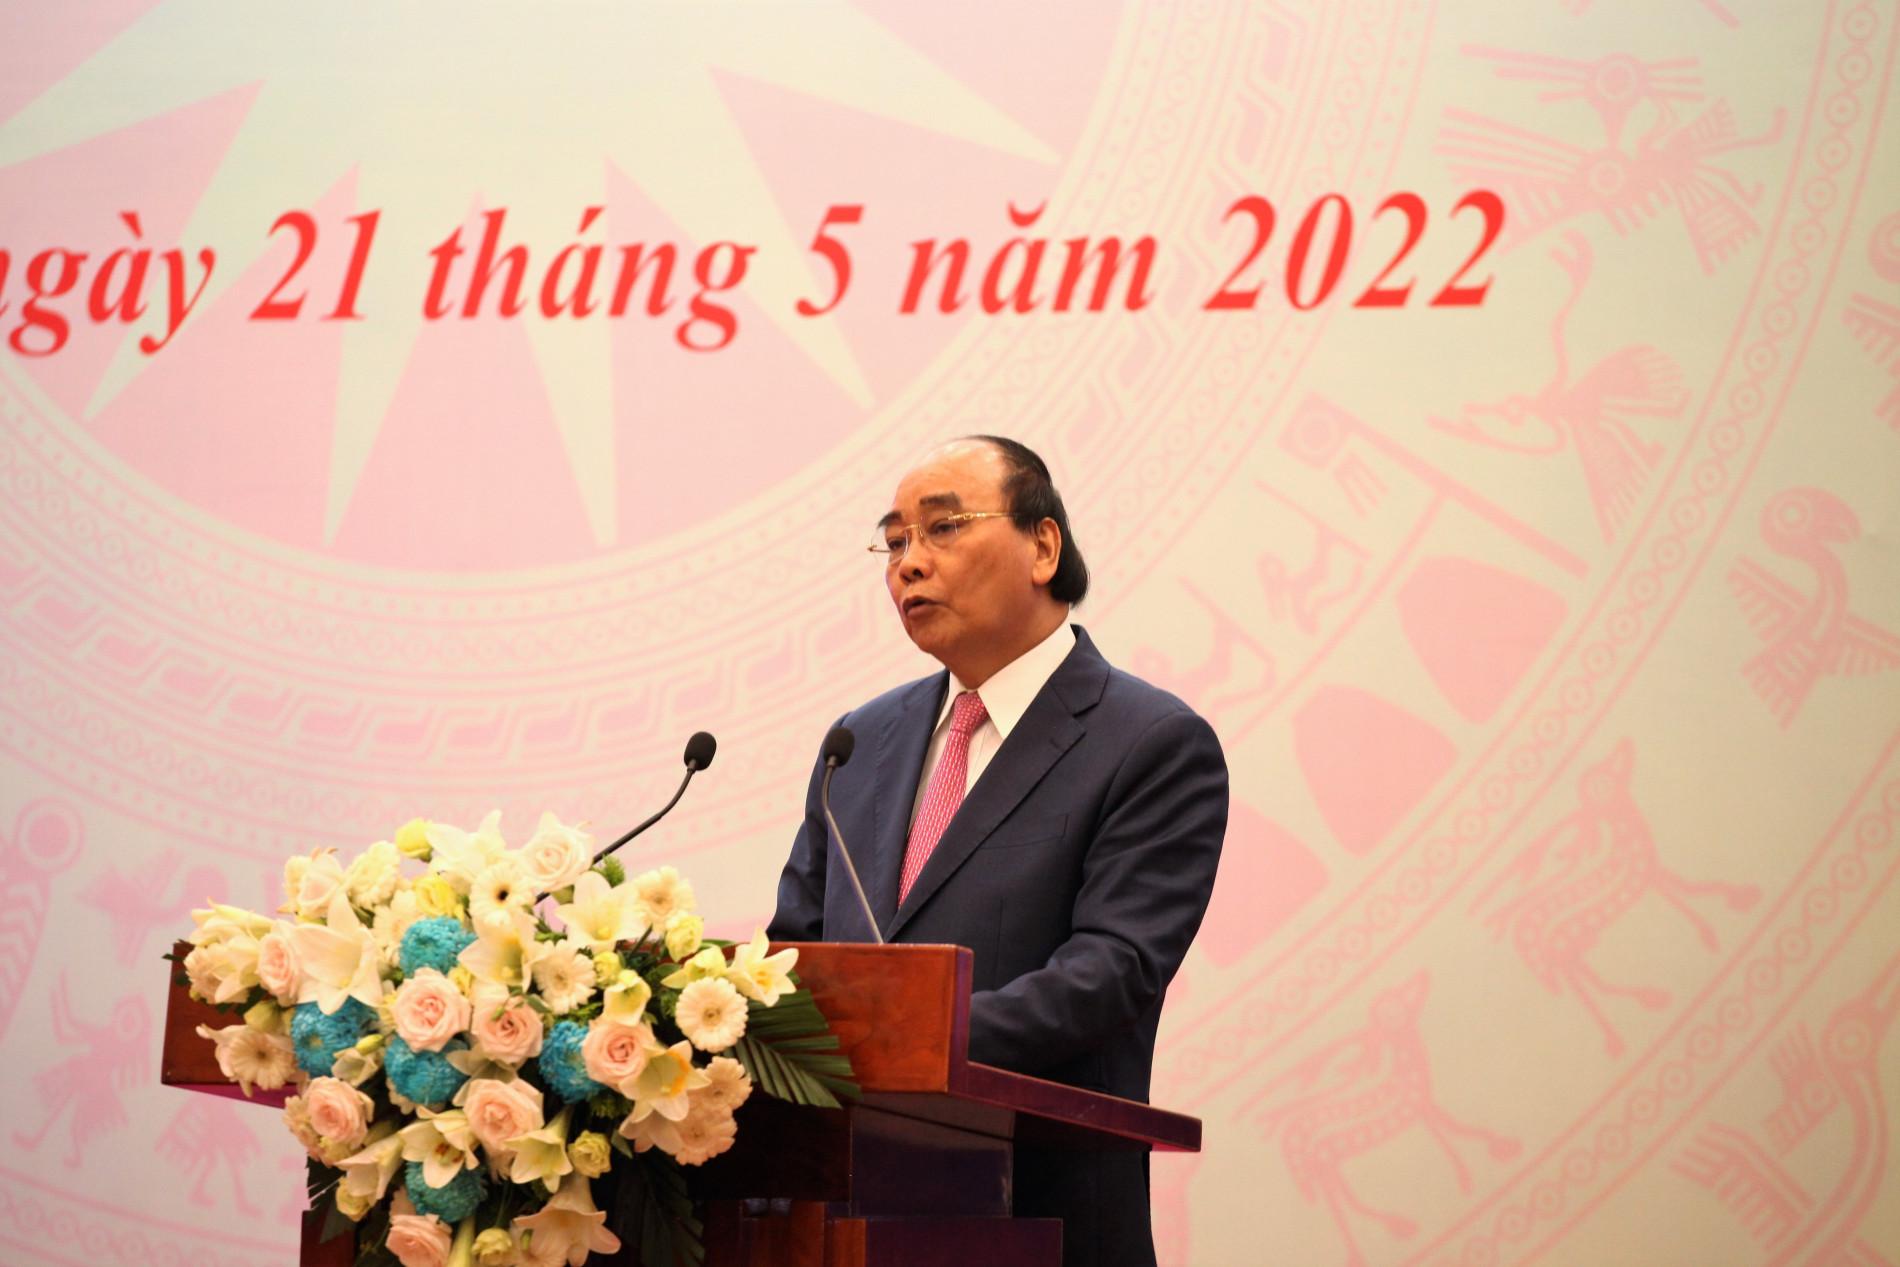 Chủ tịch nước Nguyễn Xuân Phúc dự Lễ tôn vinh trí thức khoa học và công nghệ tiêu biểu do VUSTA tổ chức 2022